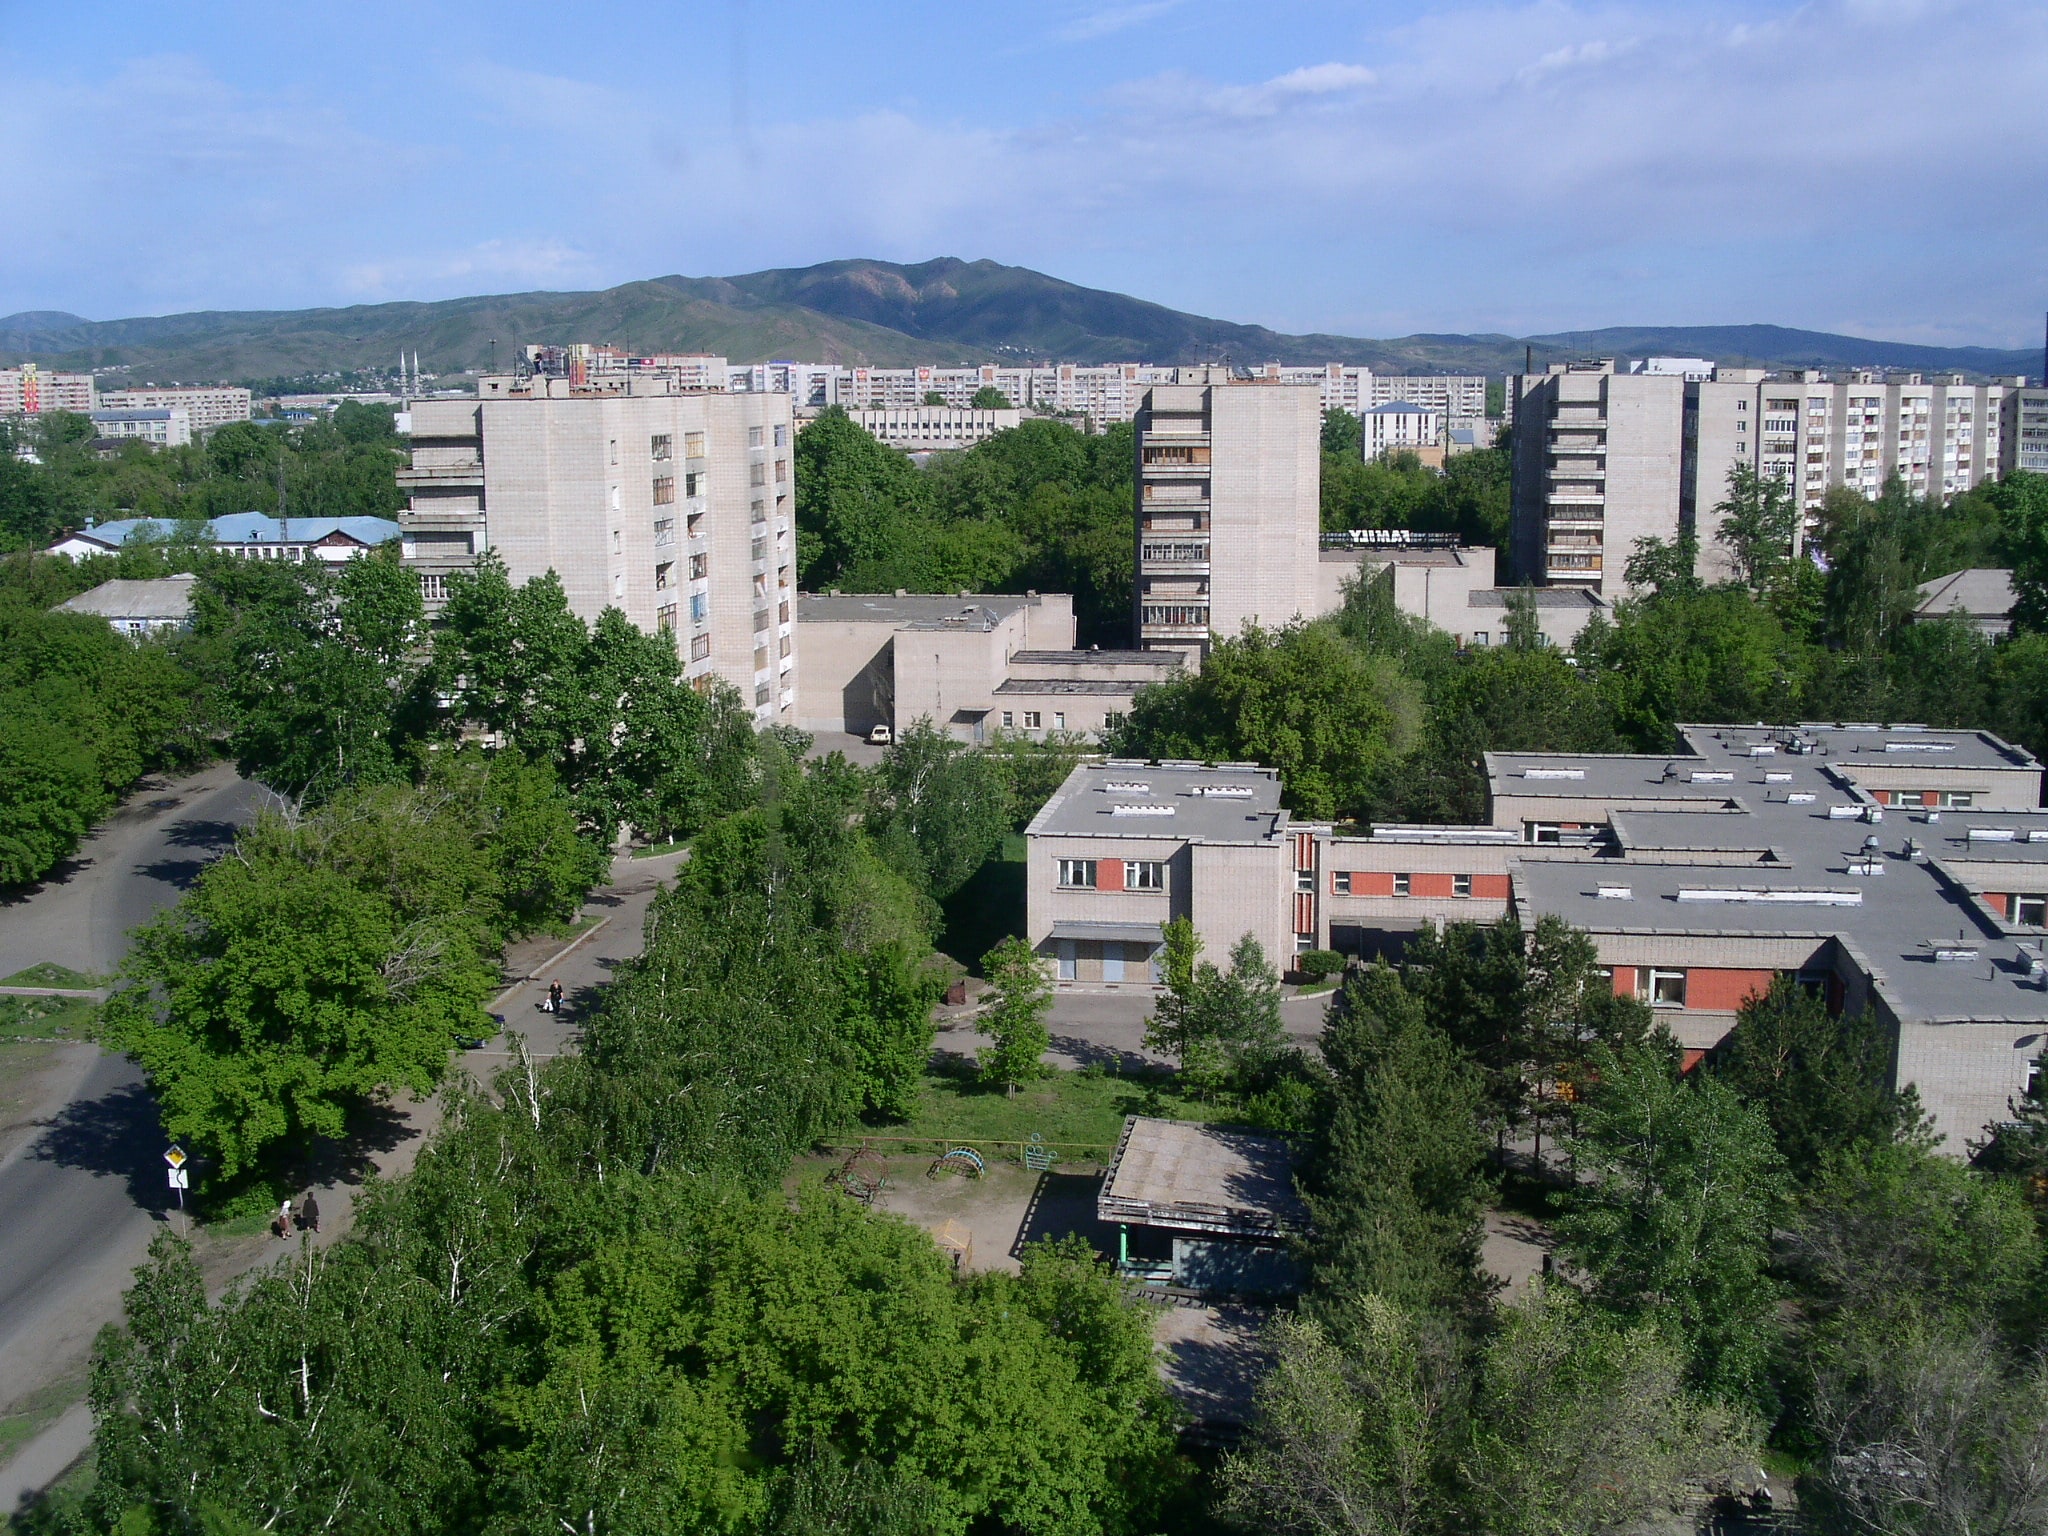 Ust-Kamenogorsk, Kazakhstan